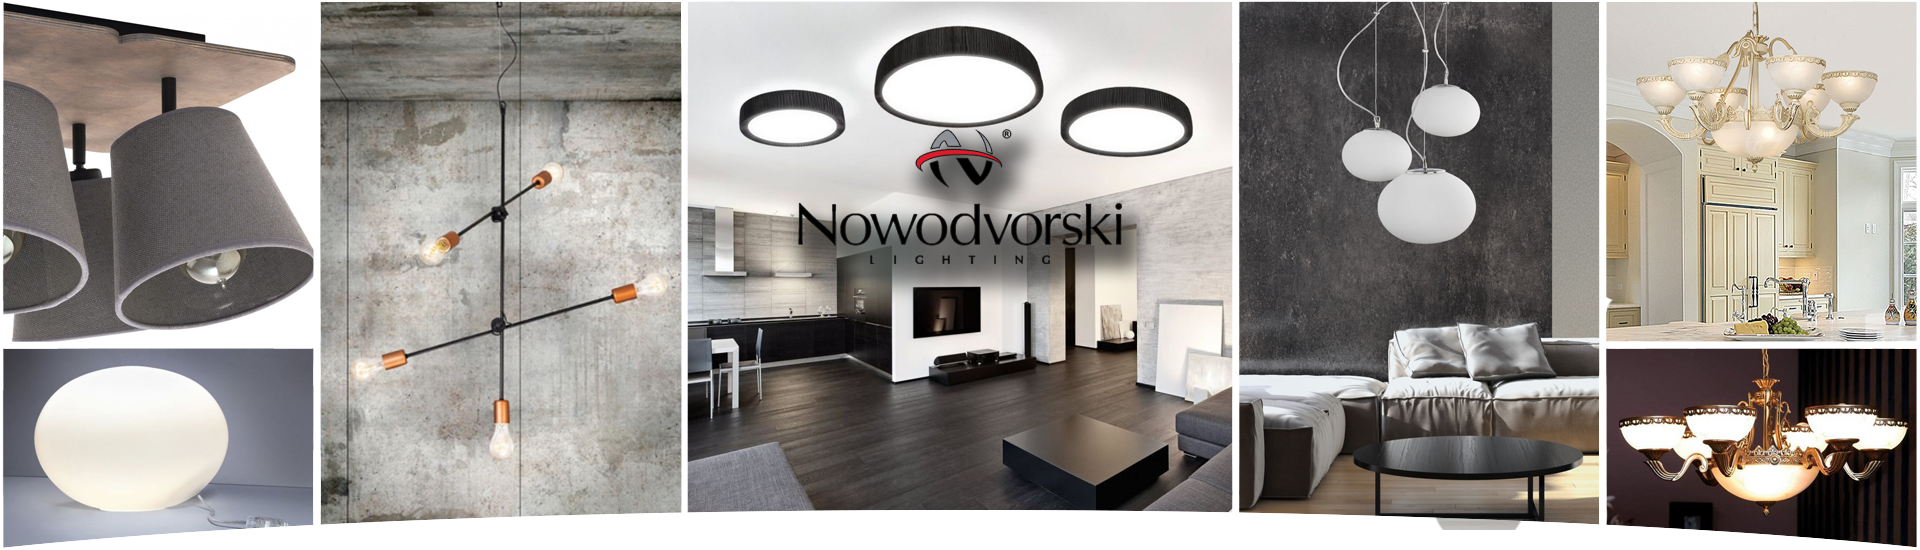 Nowodvorski_01